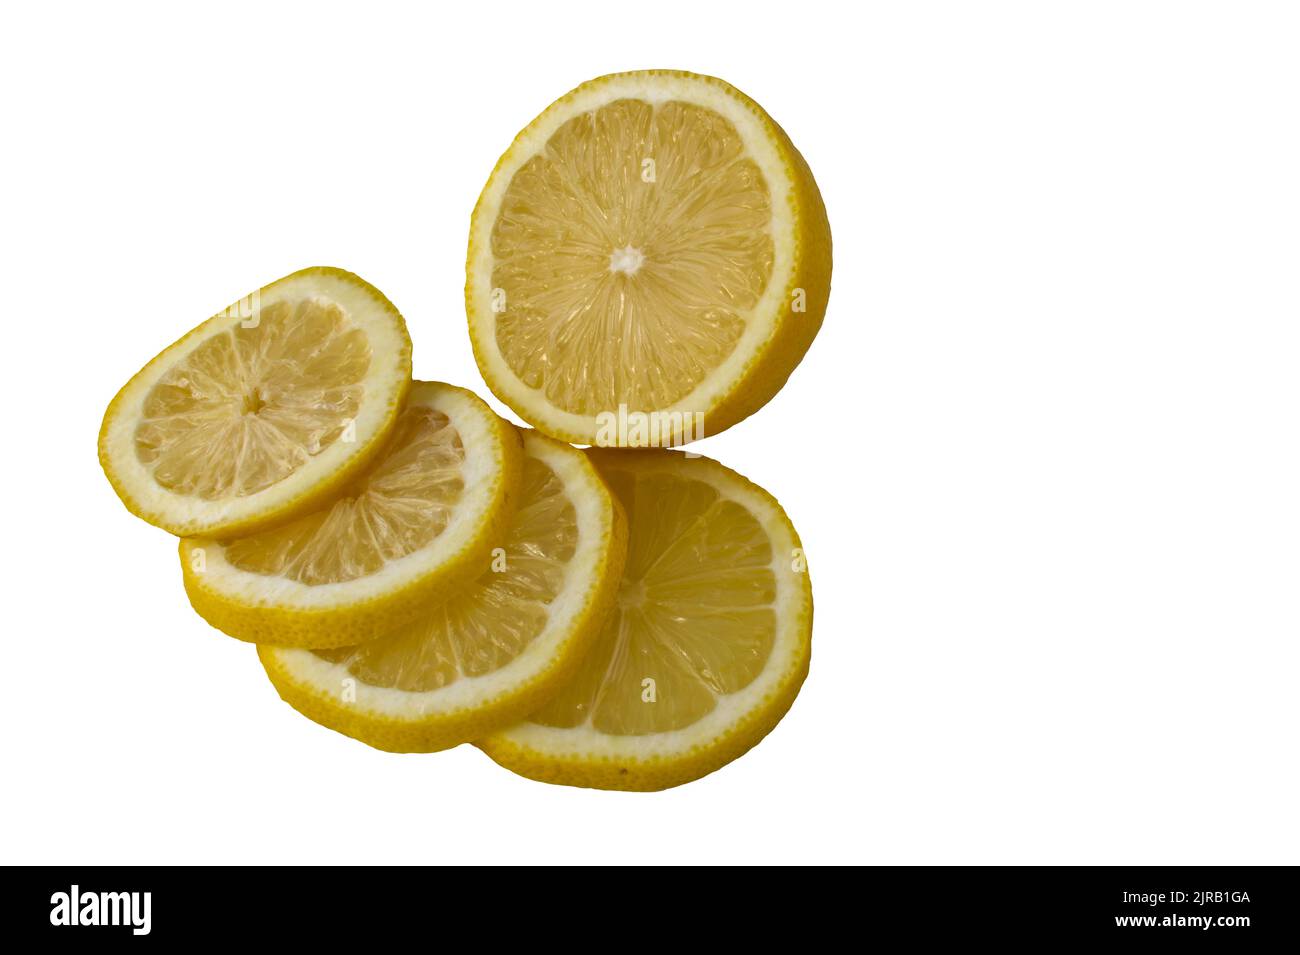 Whole lemon sliced, (citrus limon, rutaceae). Isolated on white background. Stock Photo